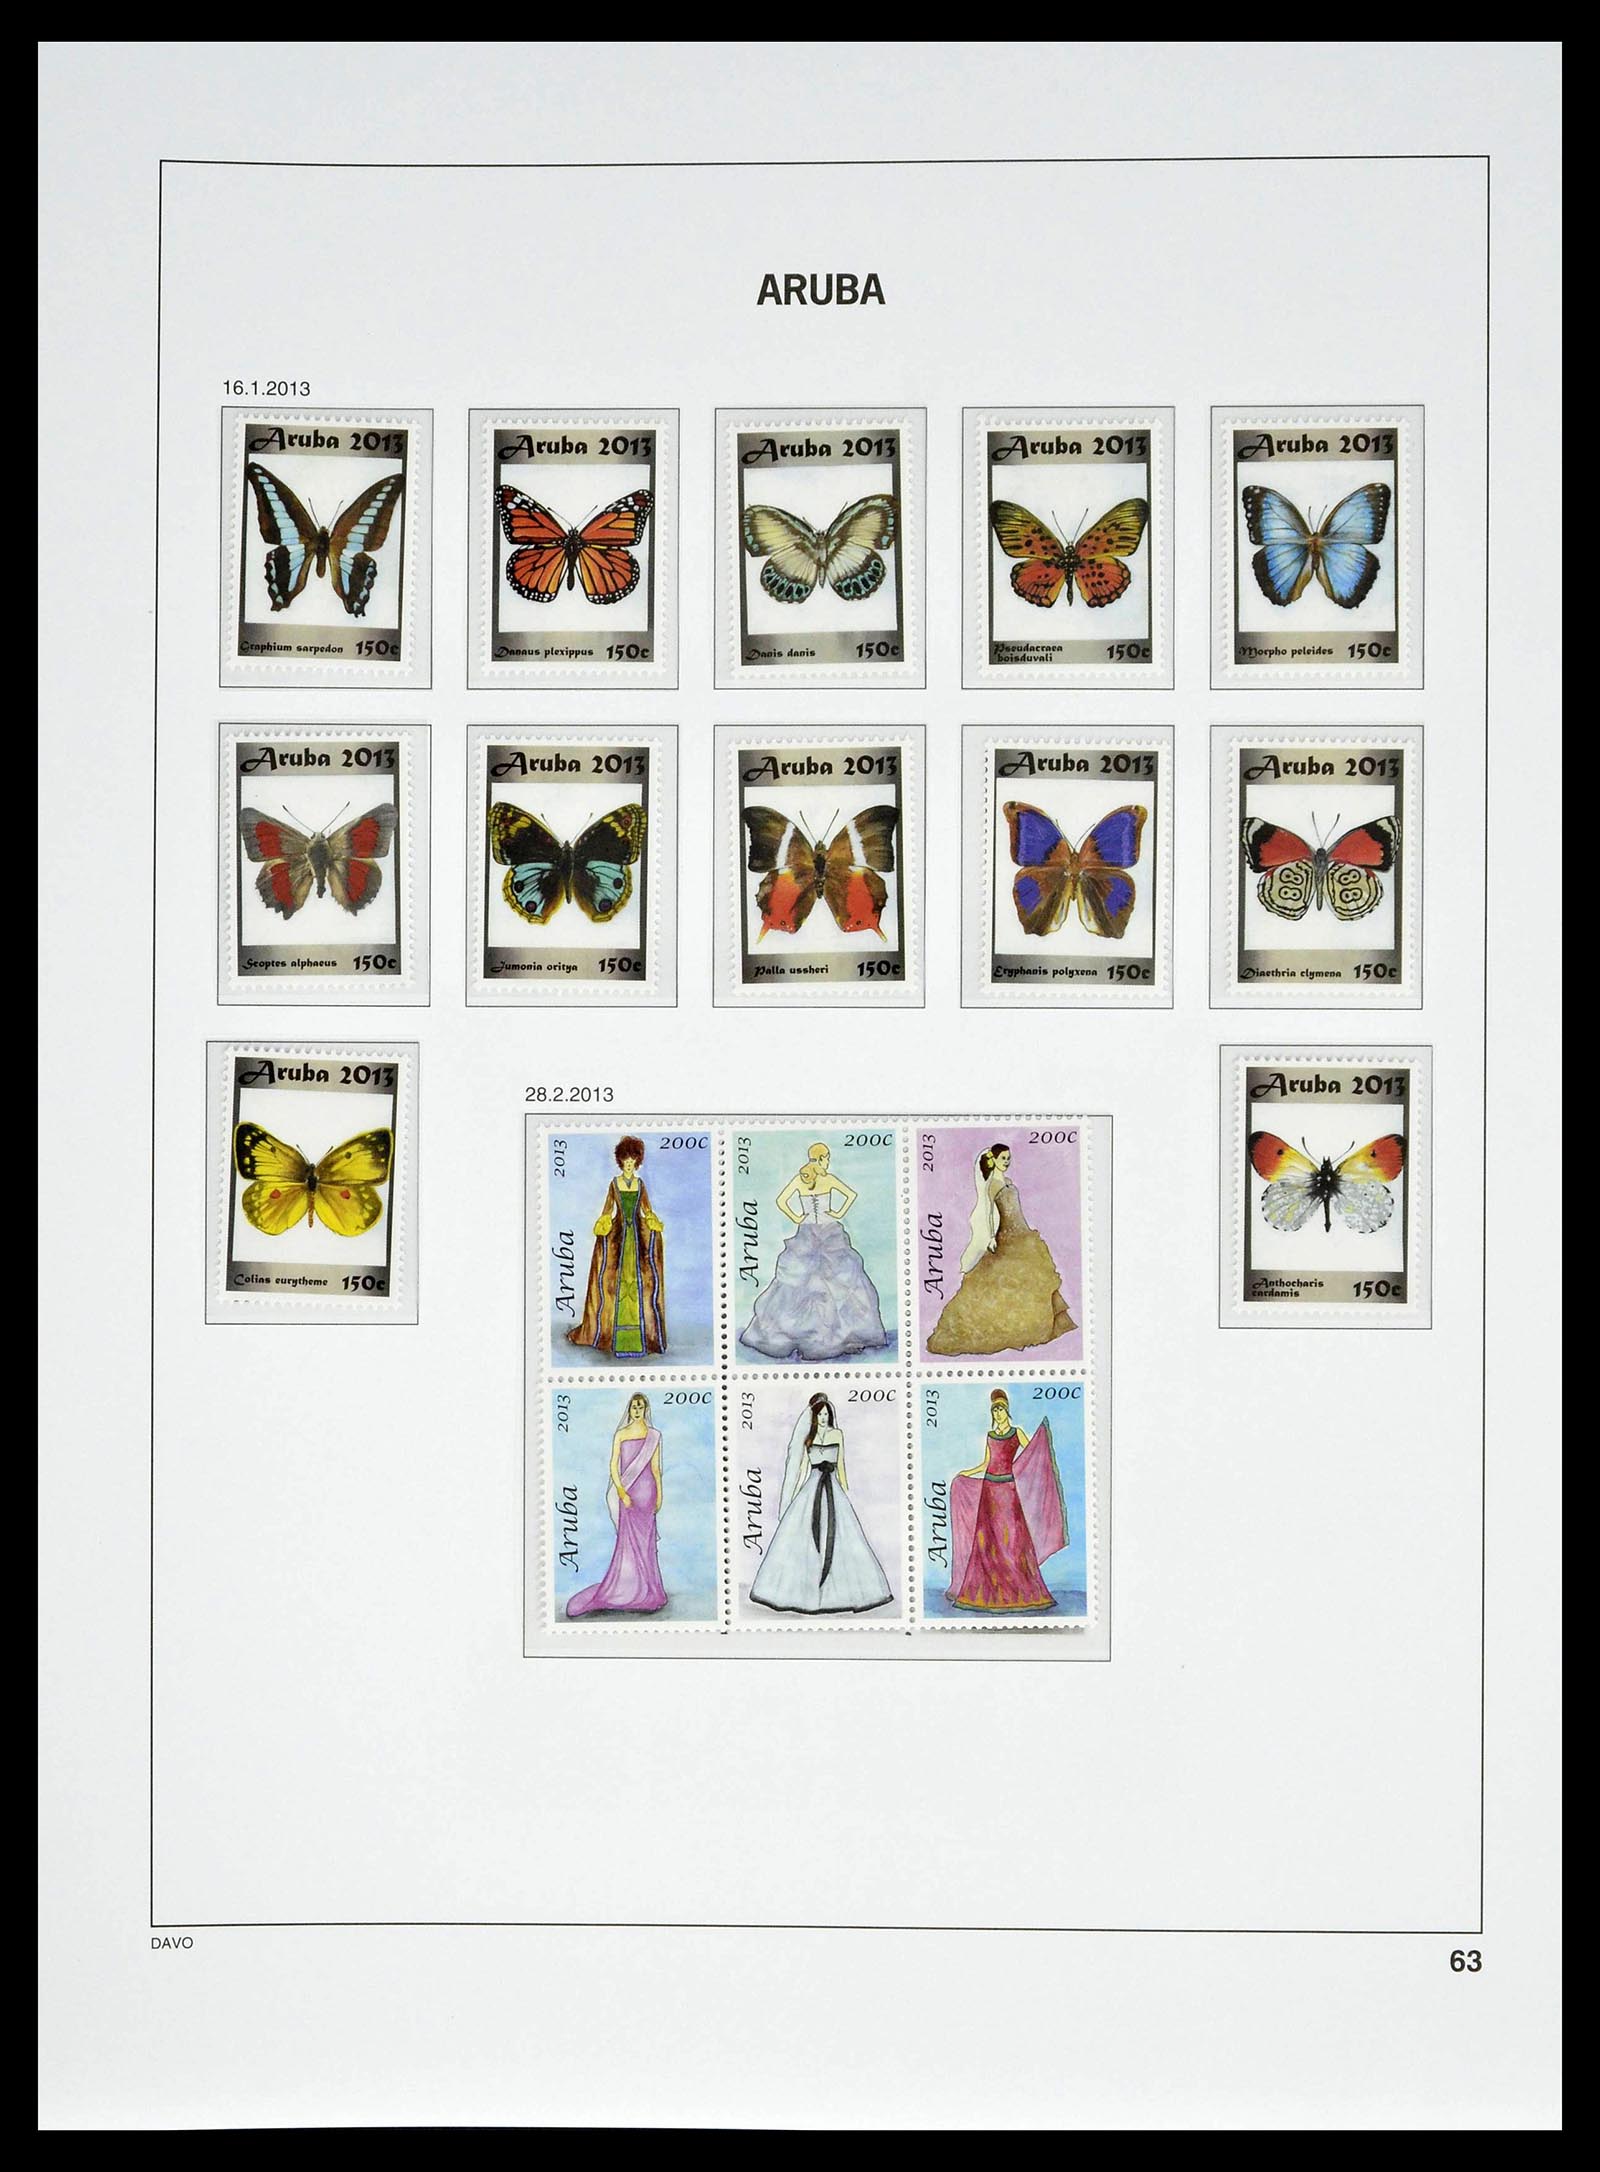 39361 0063 - Stamp collection 39361 Aruba 1986-2013.